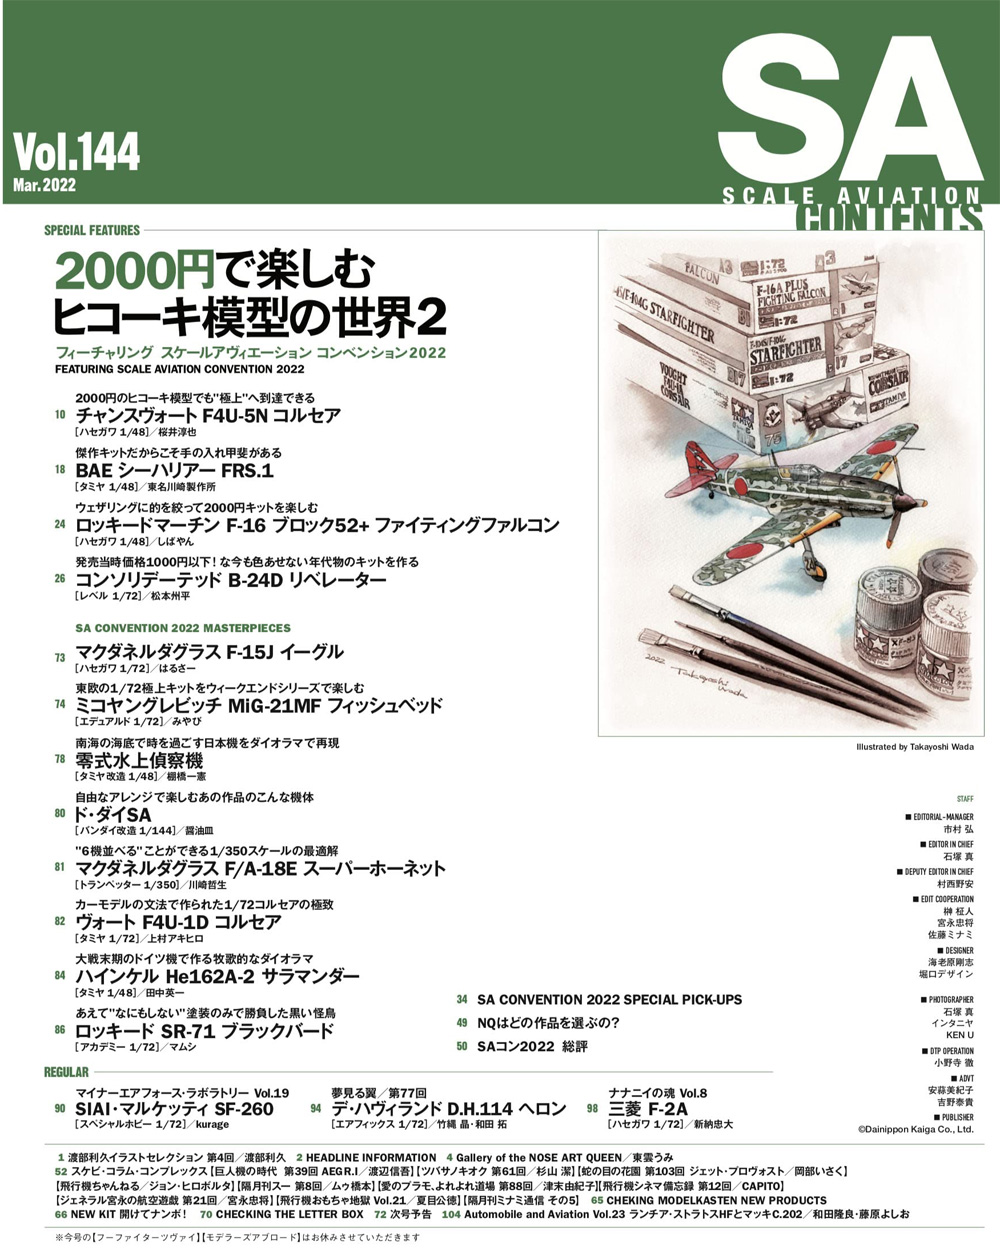 スケール アヴィエーション 2022年3月号 Vol.144 雑誌 (大日本絵画 Scale Aviation No.Vol.144) 商品画像_1